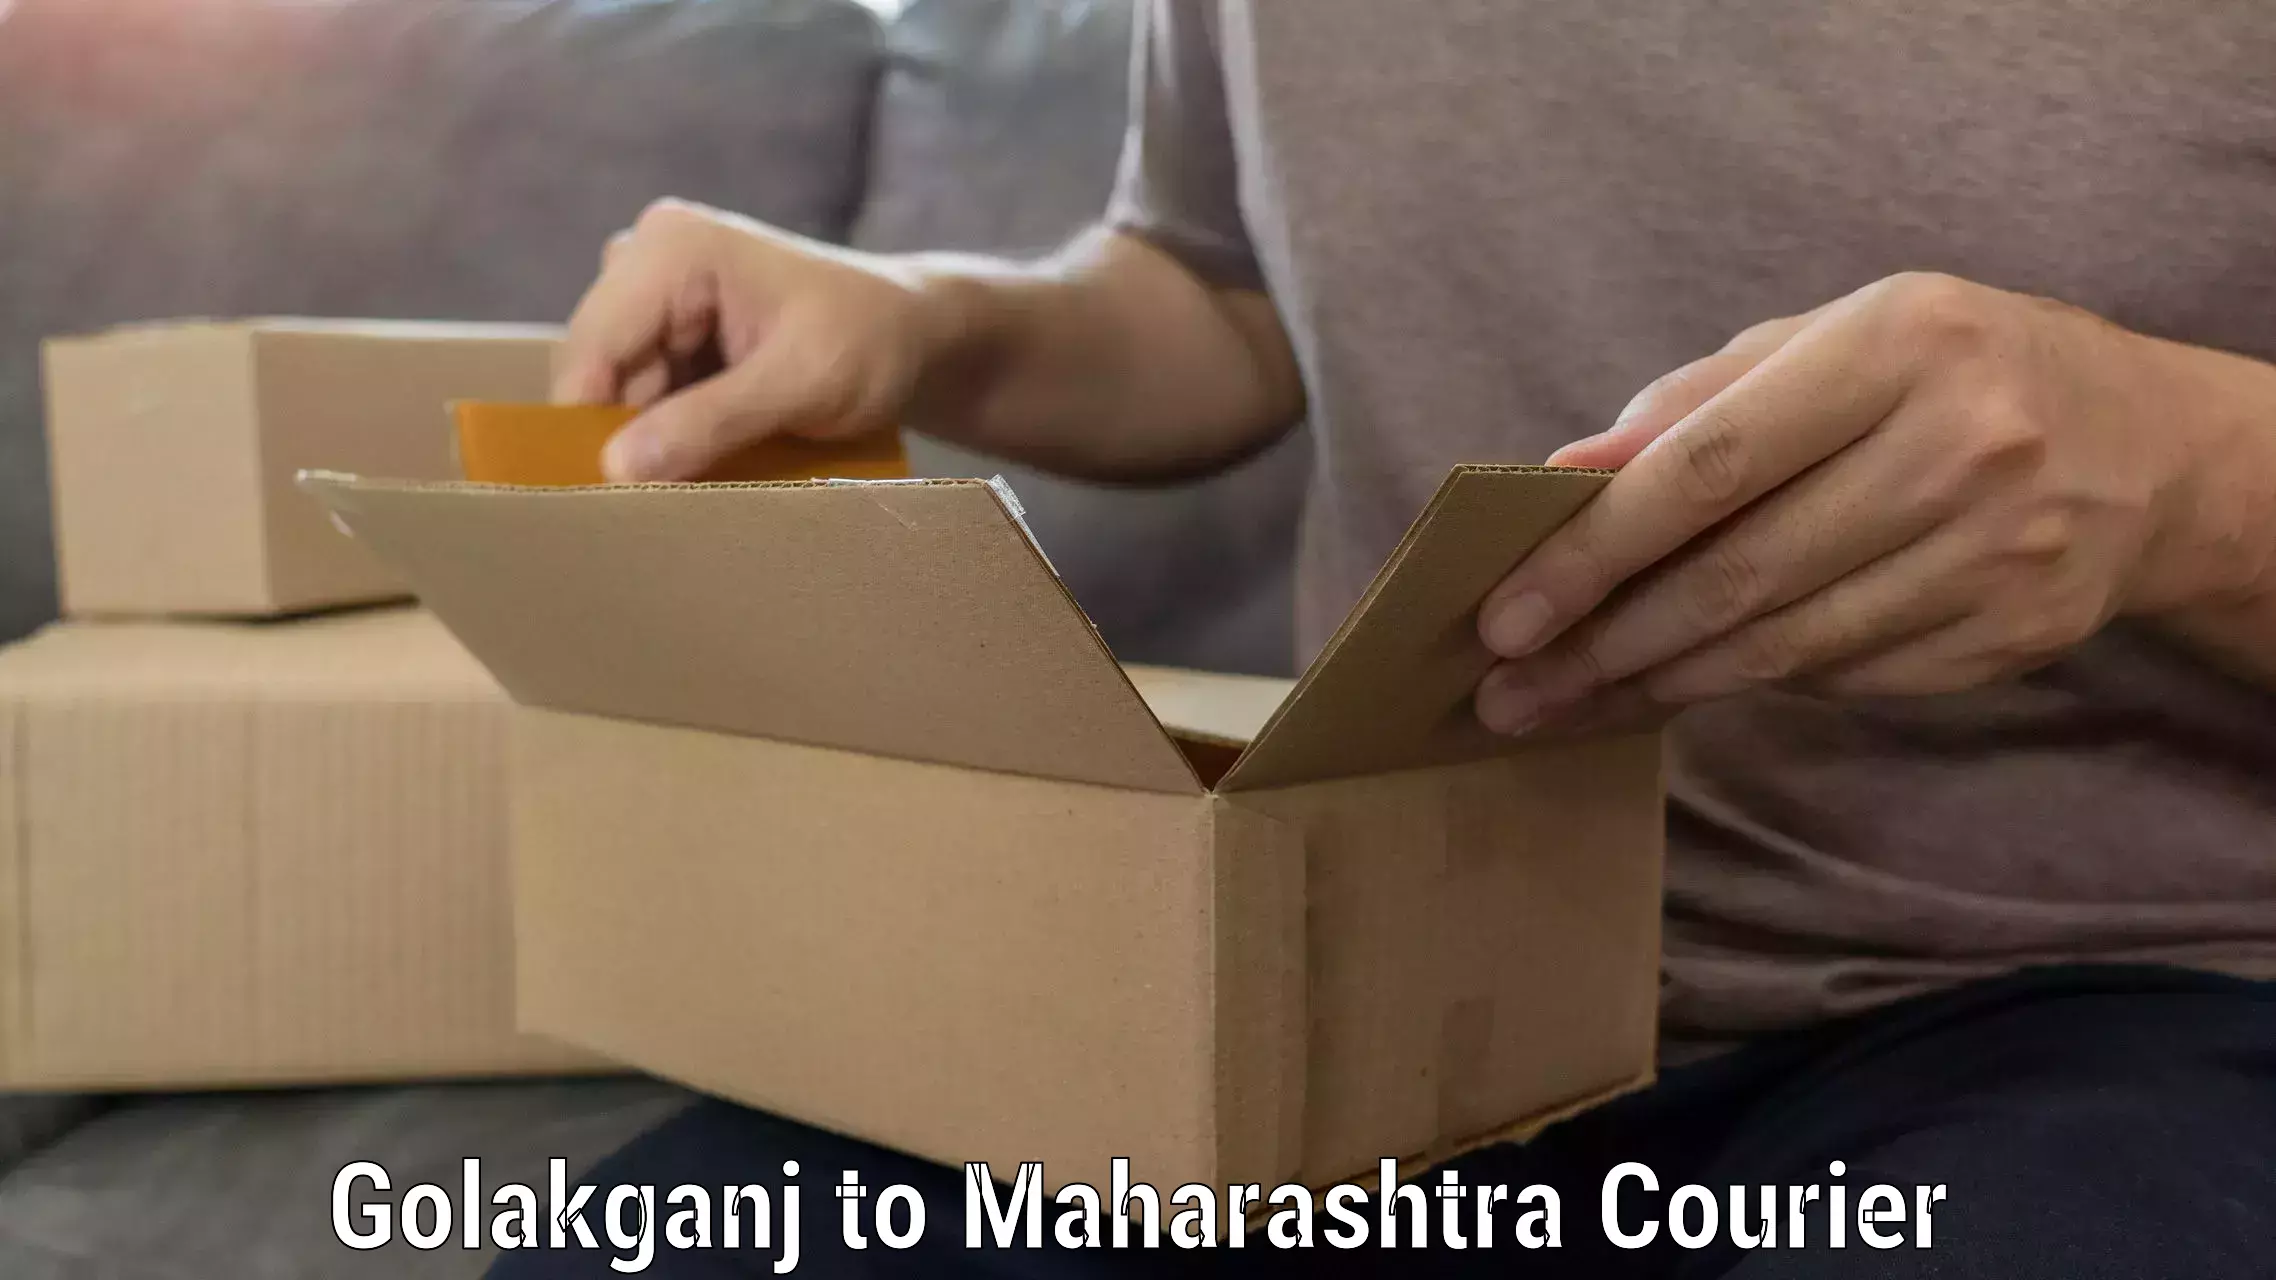 Reliable furniture transport Golakganj to Maharashtra